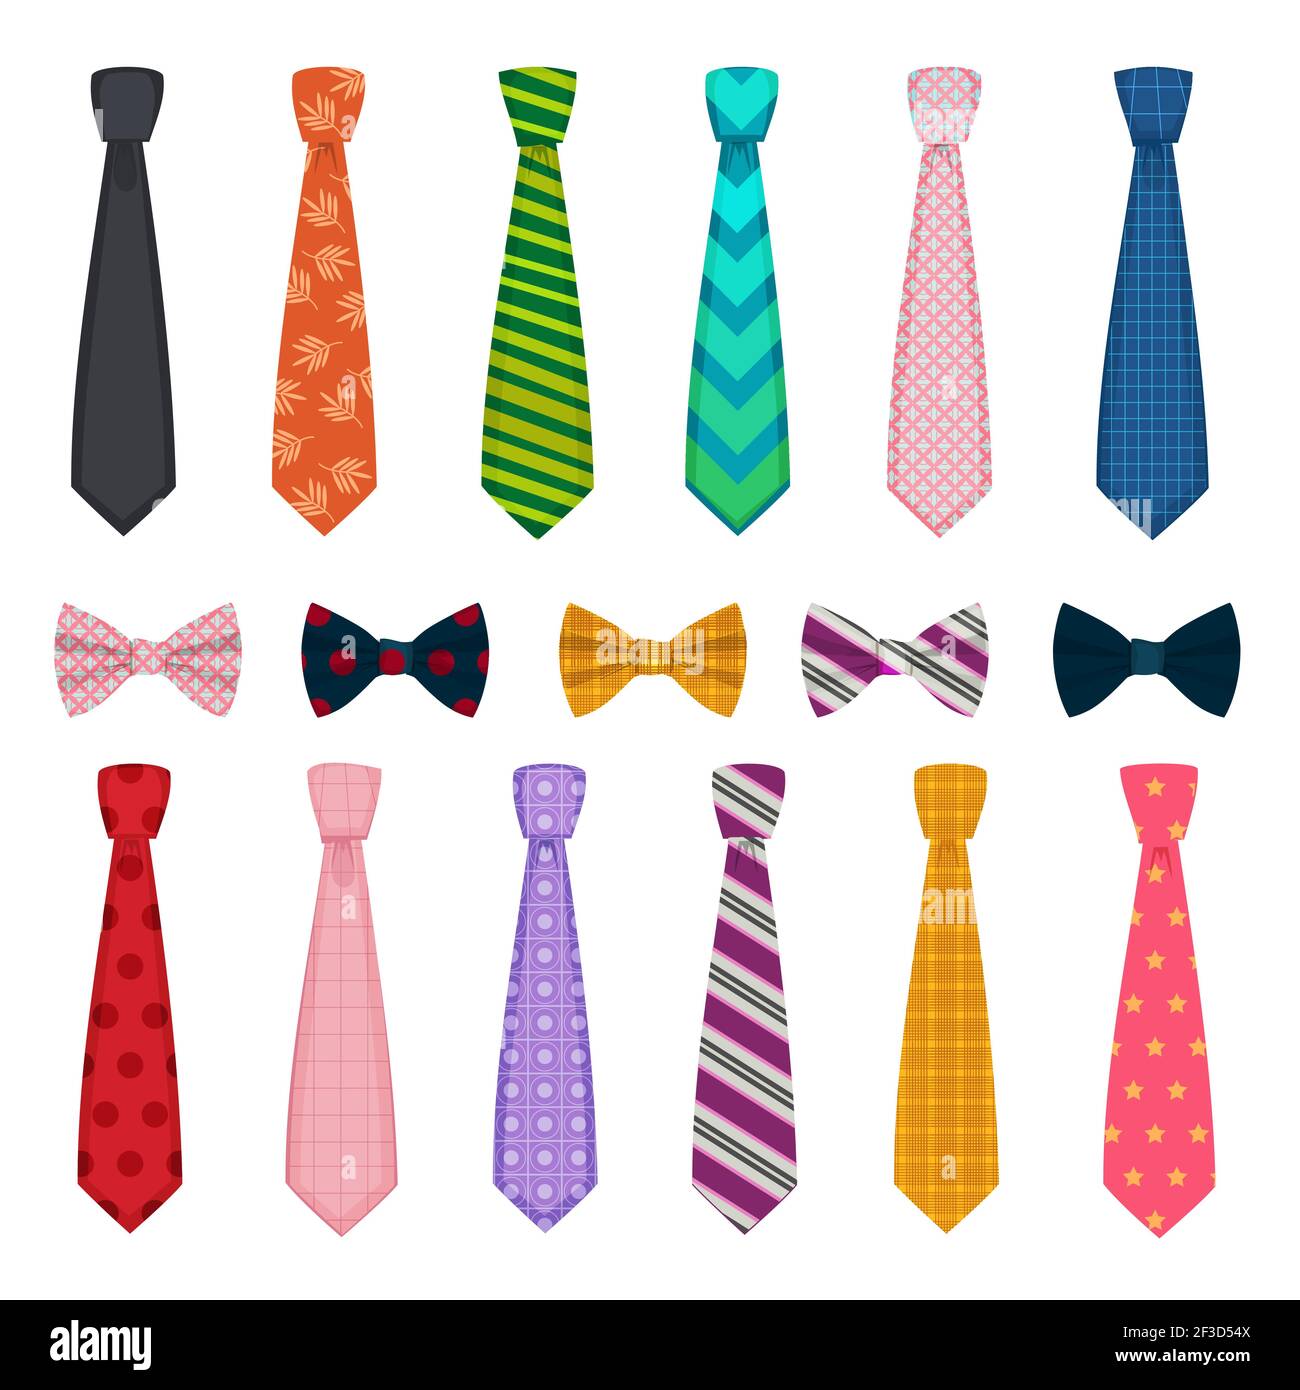 Krawatte und Schleifen. Farbige Mode Kleidung Accessoires für Männer Hemden Anzüge Vektor Kollektionen von Krawatten Stock Vektor